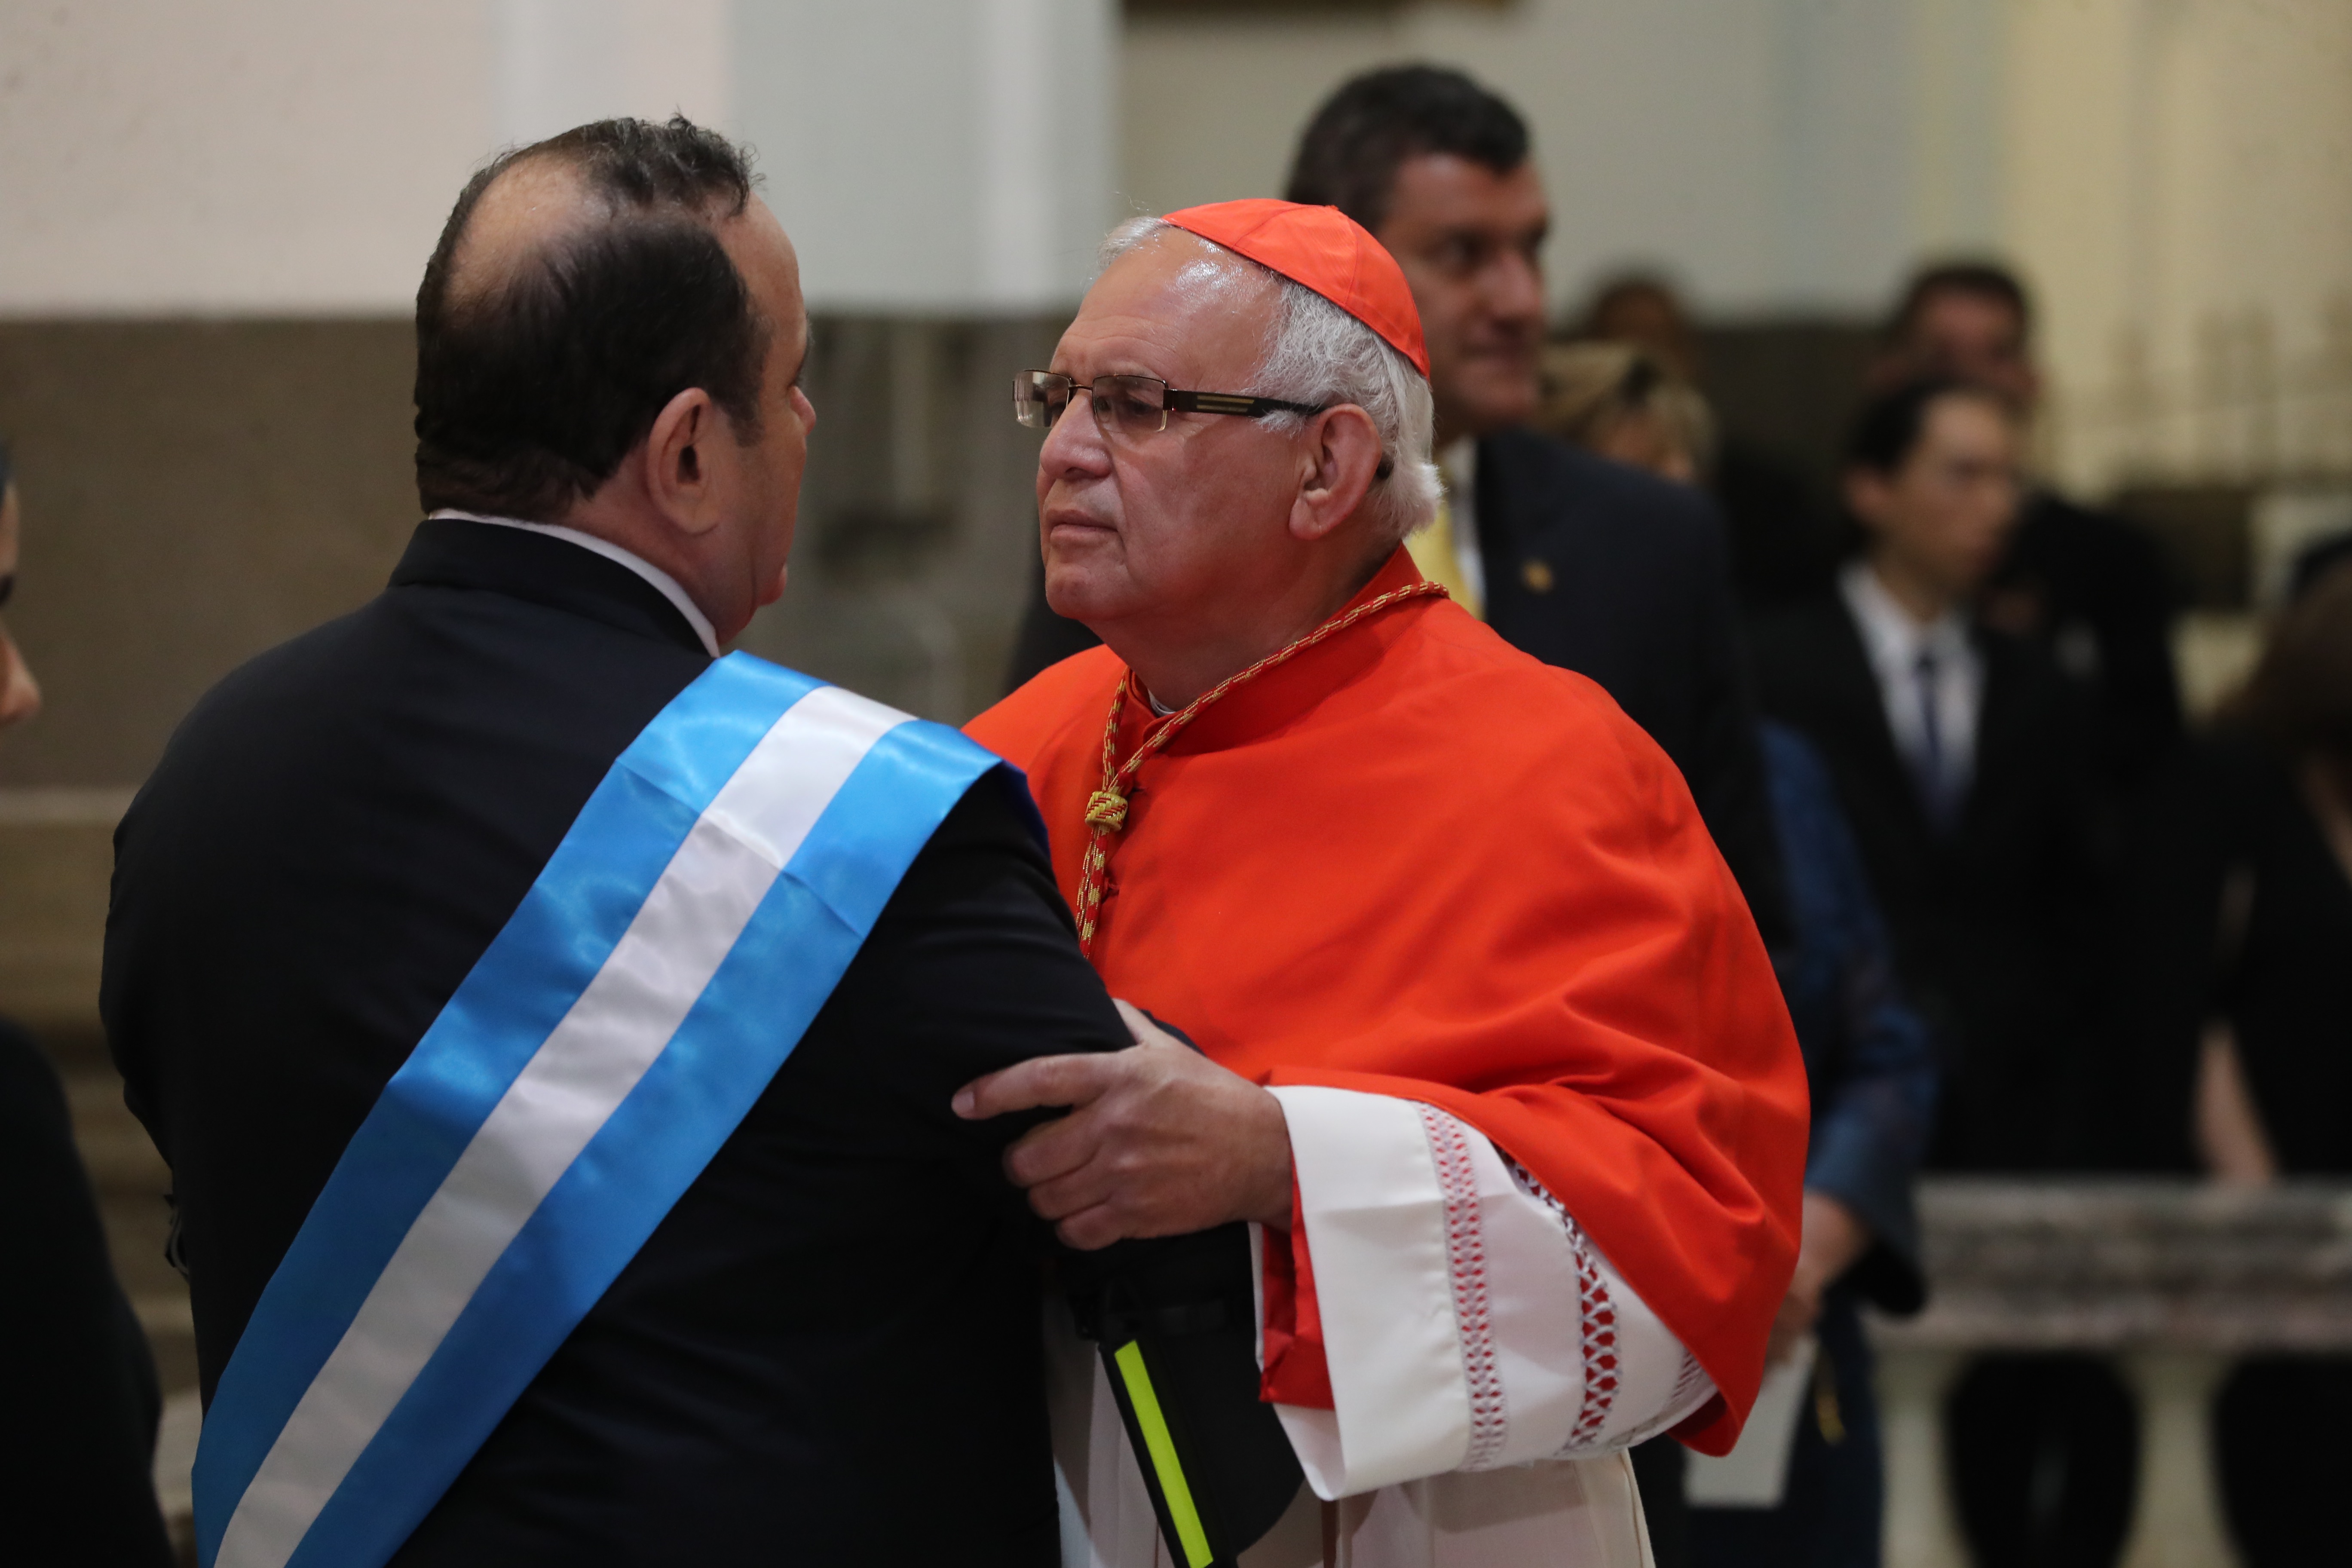 El cardenal Álvaro Ramazzini saluda al presidente Giammamttei, durante el tedeum el día que el mandatario asumió el cargo. (Foto Prensa Libre: Hemeroteca PL)